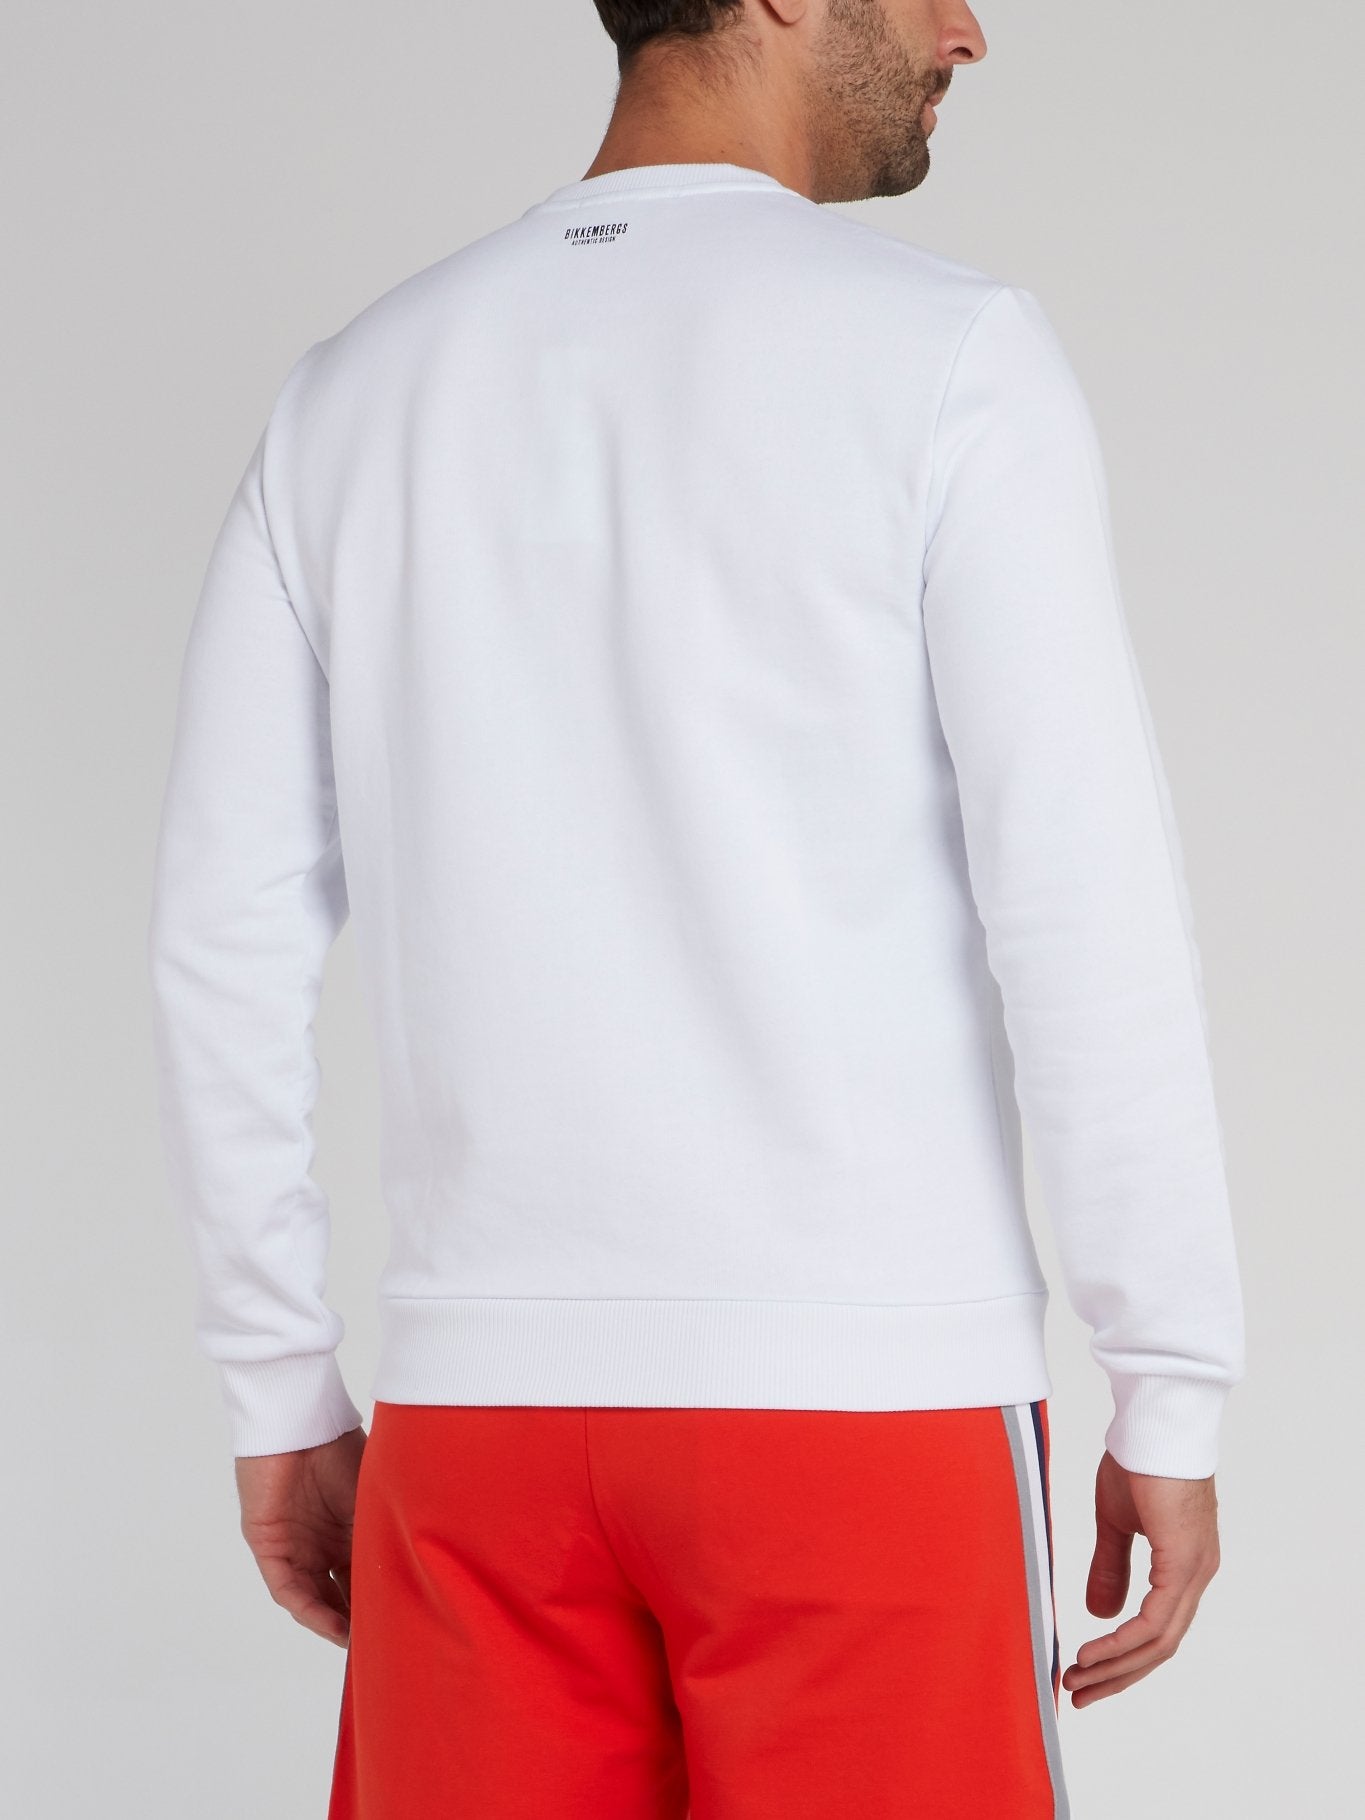 White Embroidered Statement Sweatshirt